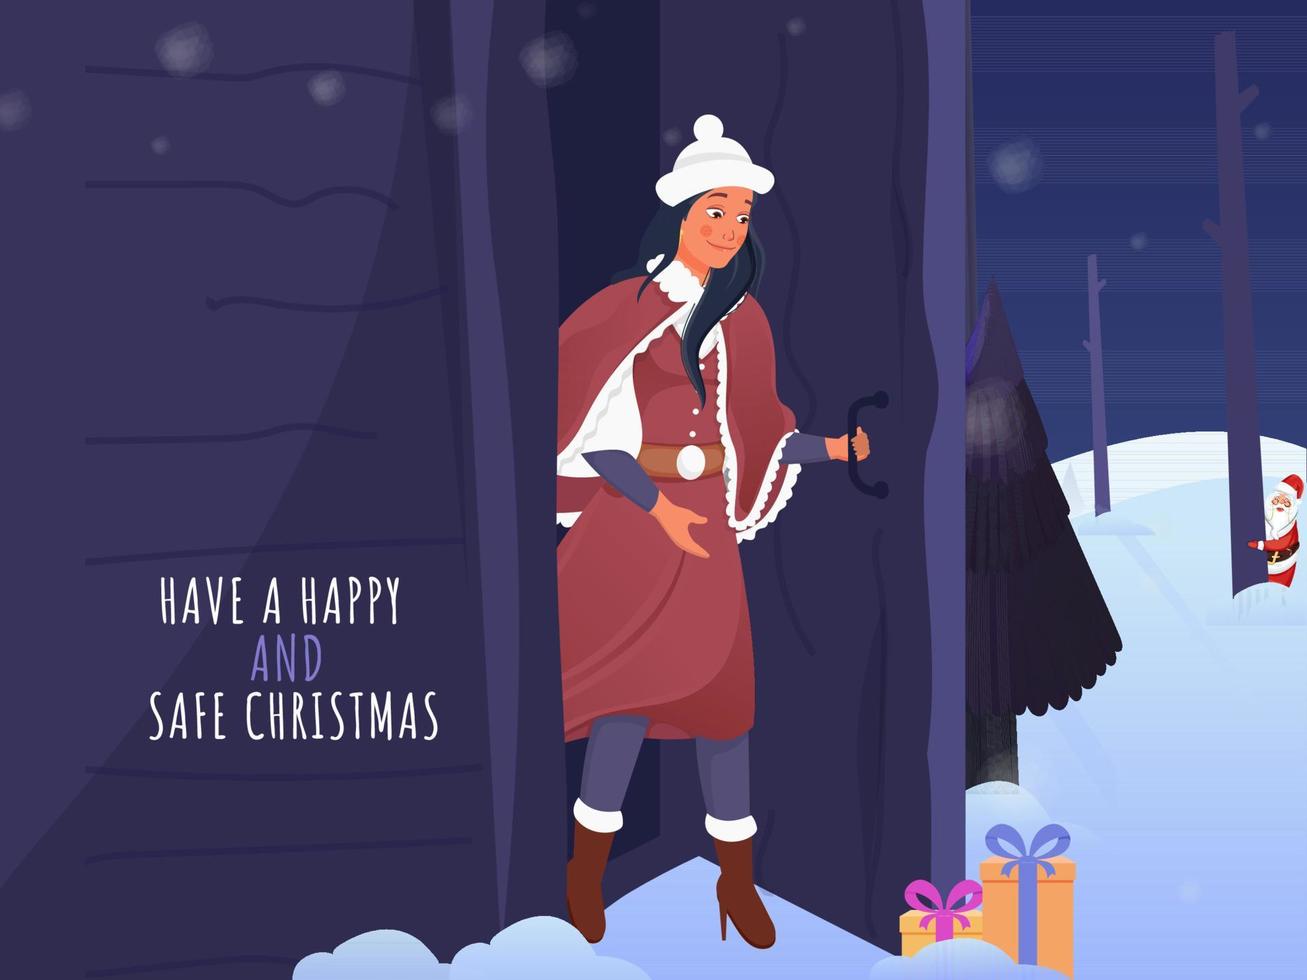 ha en Lycklig och säker jul begrepp med ung flicka ser gåva lådor och santa claus Bakom träd på snöig bakgrund. vektor